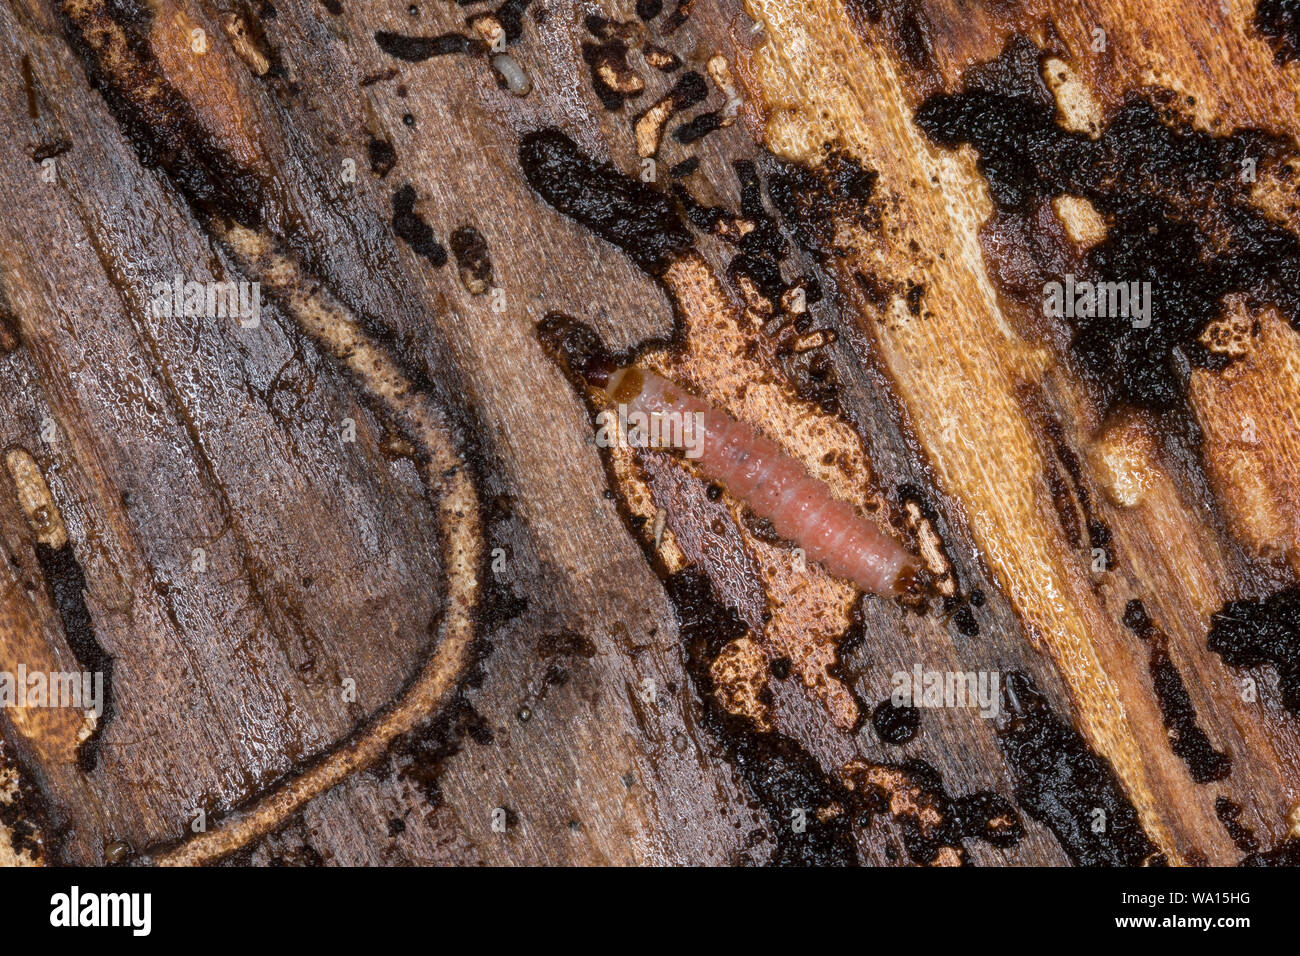 Ameisenbuntkäfer, Ameisenbunt-Käfer, Larve unter der Rinde einer Fichte, Gemeiner Ameisenbuntkäfer, Borkenkäferfresser, Ameisenartiger Buntkäfer, Than Stock Photo